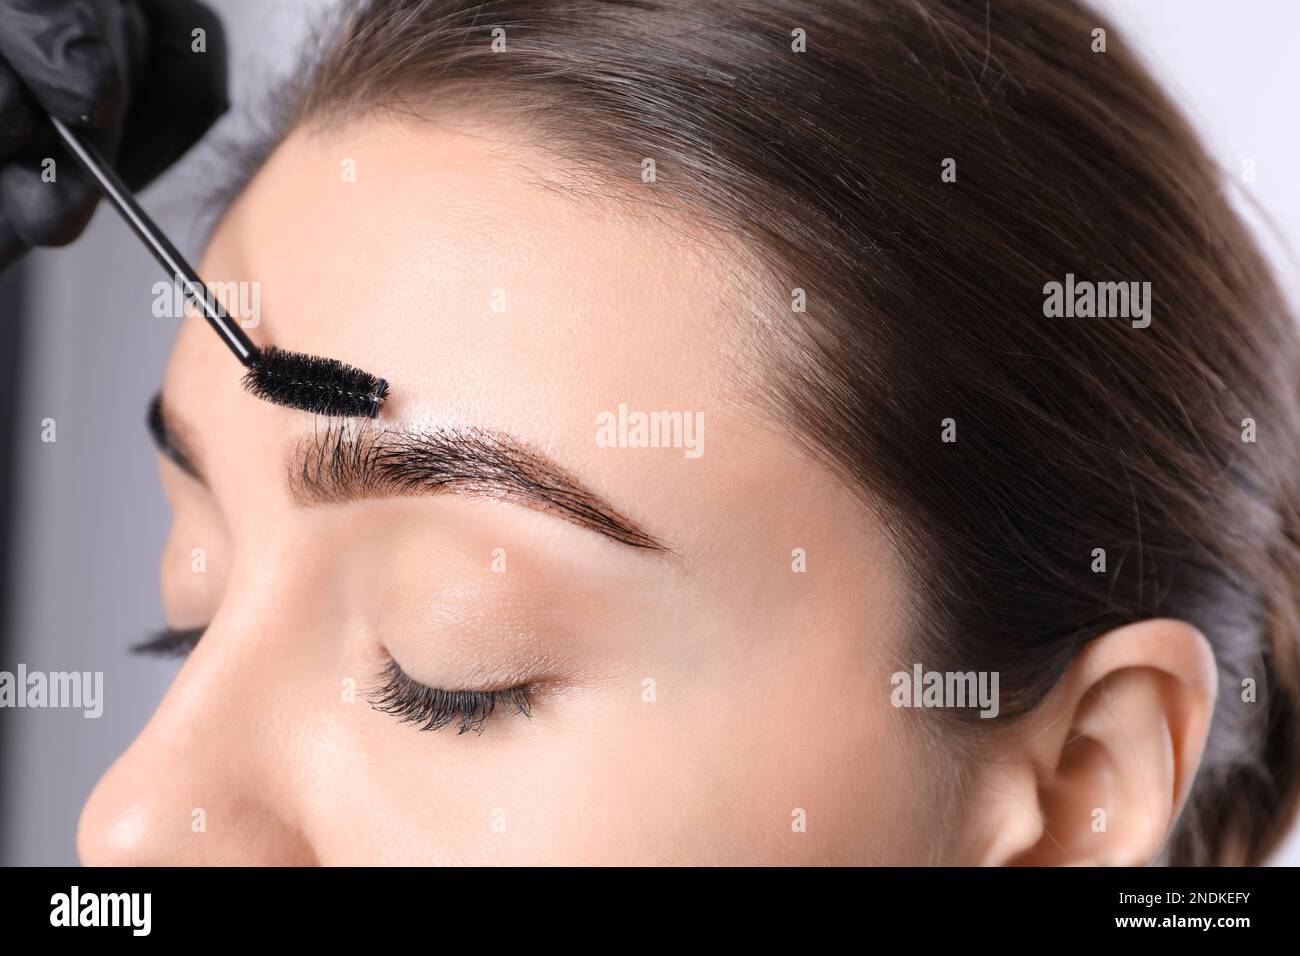 Kosmetikerin putzt die Augenbrauen von Frauen, nachdem sie auf hellem Hintergrund getönt hat, Nahaufnahme Stockfoto